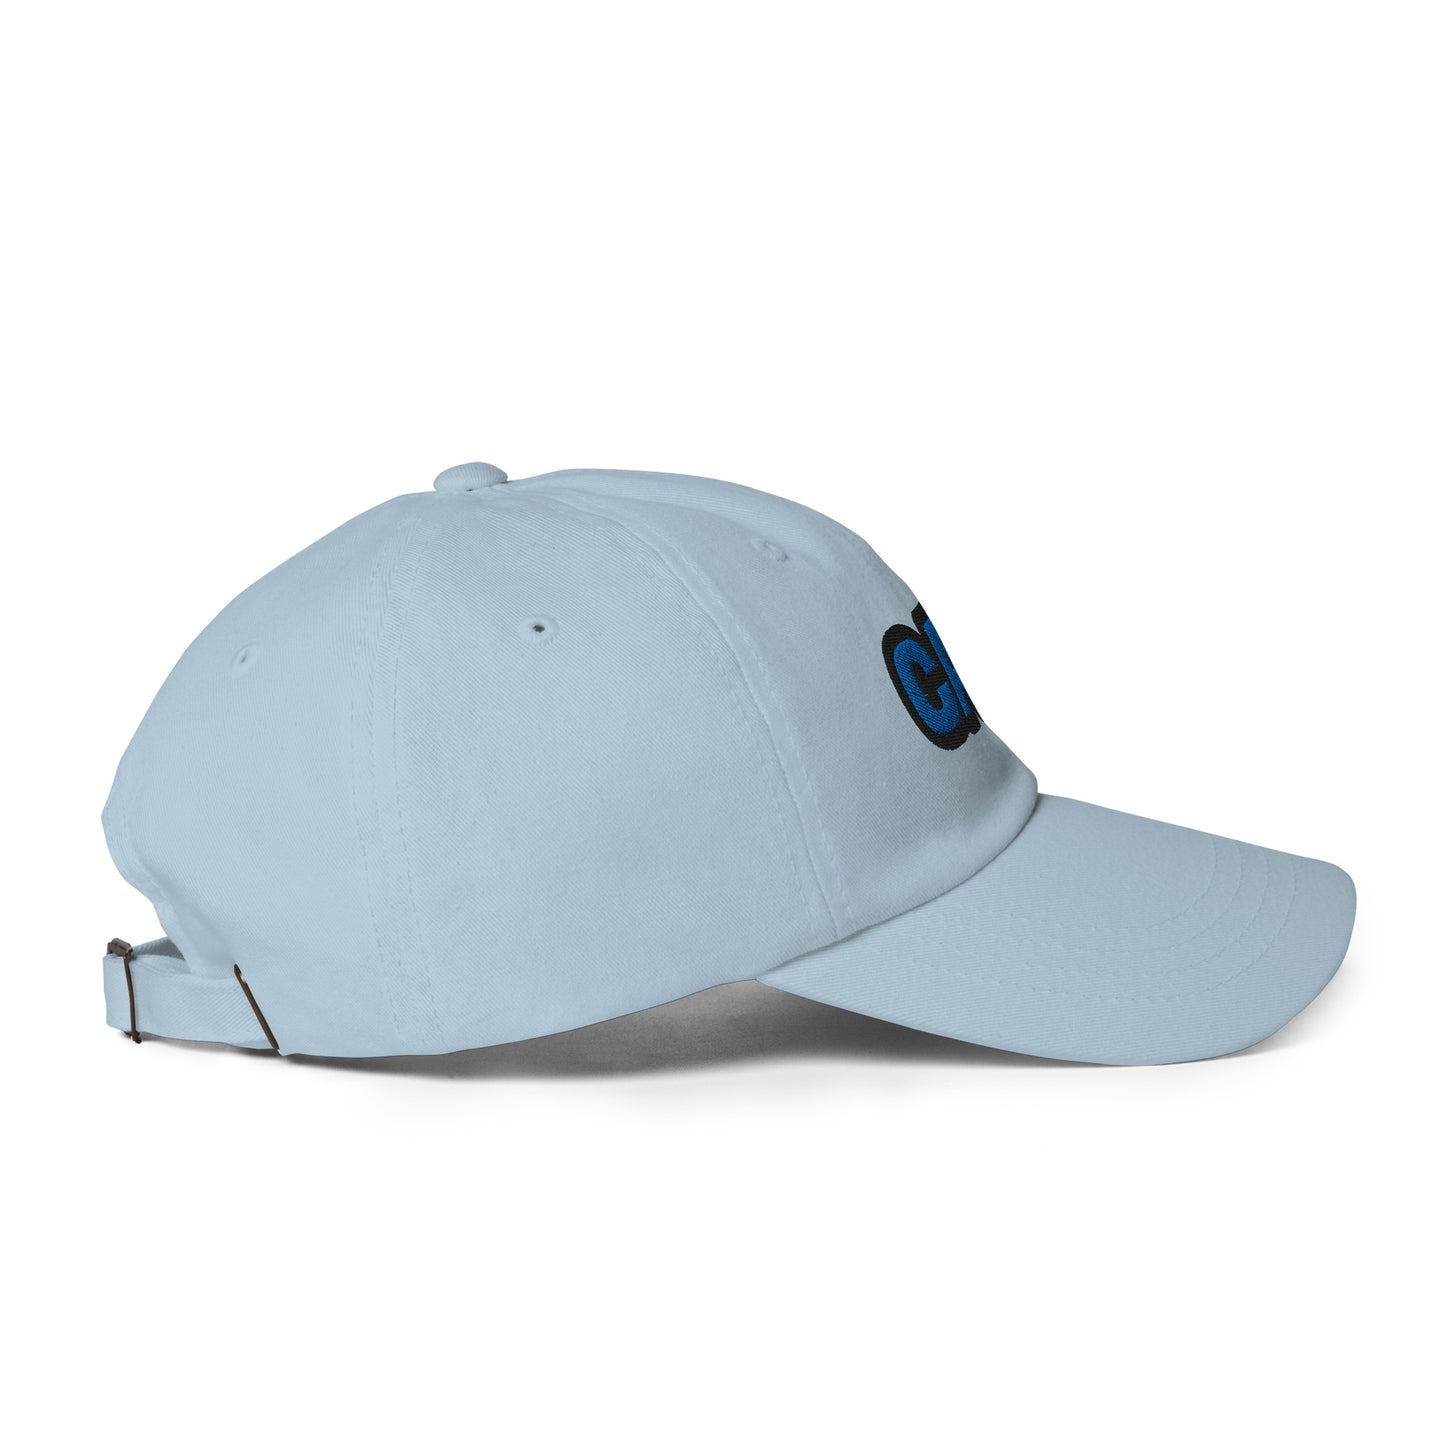 CAP hat